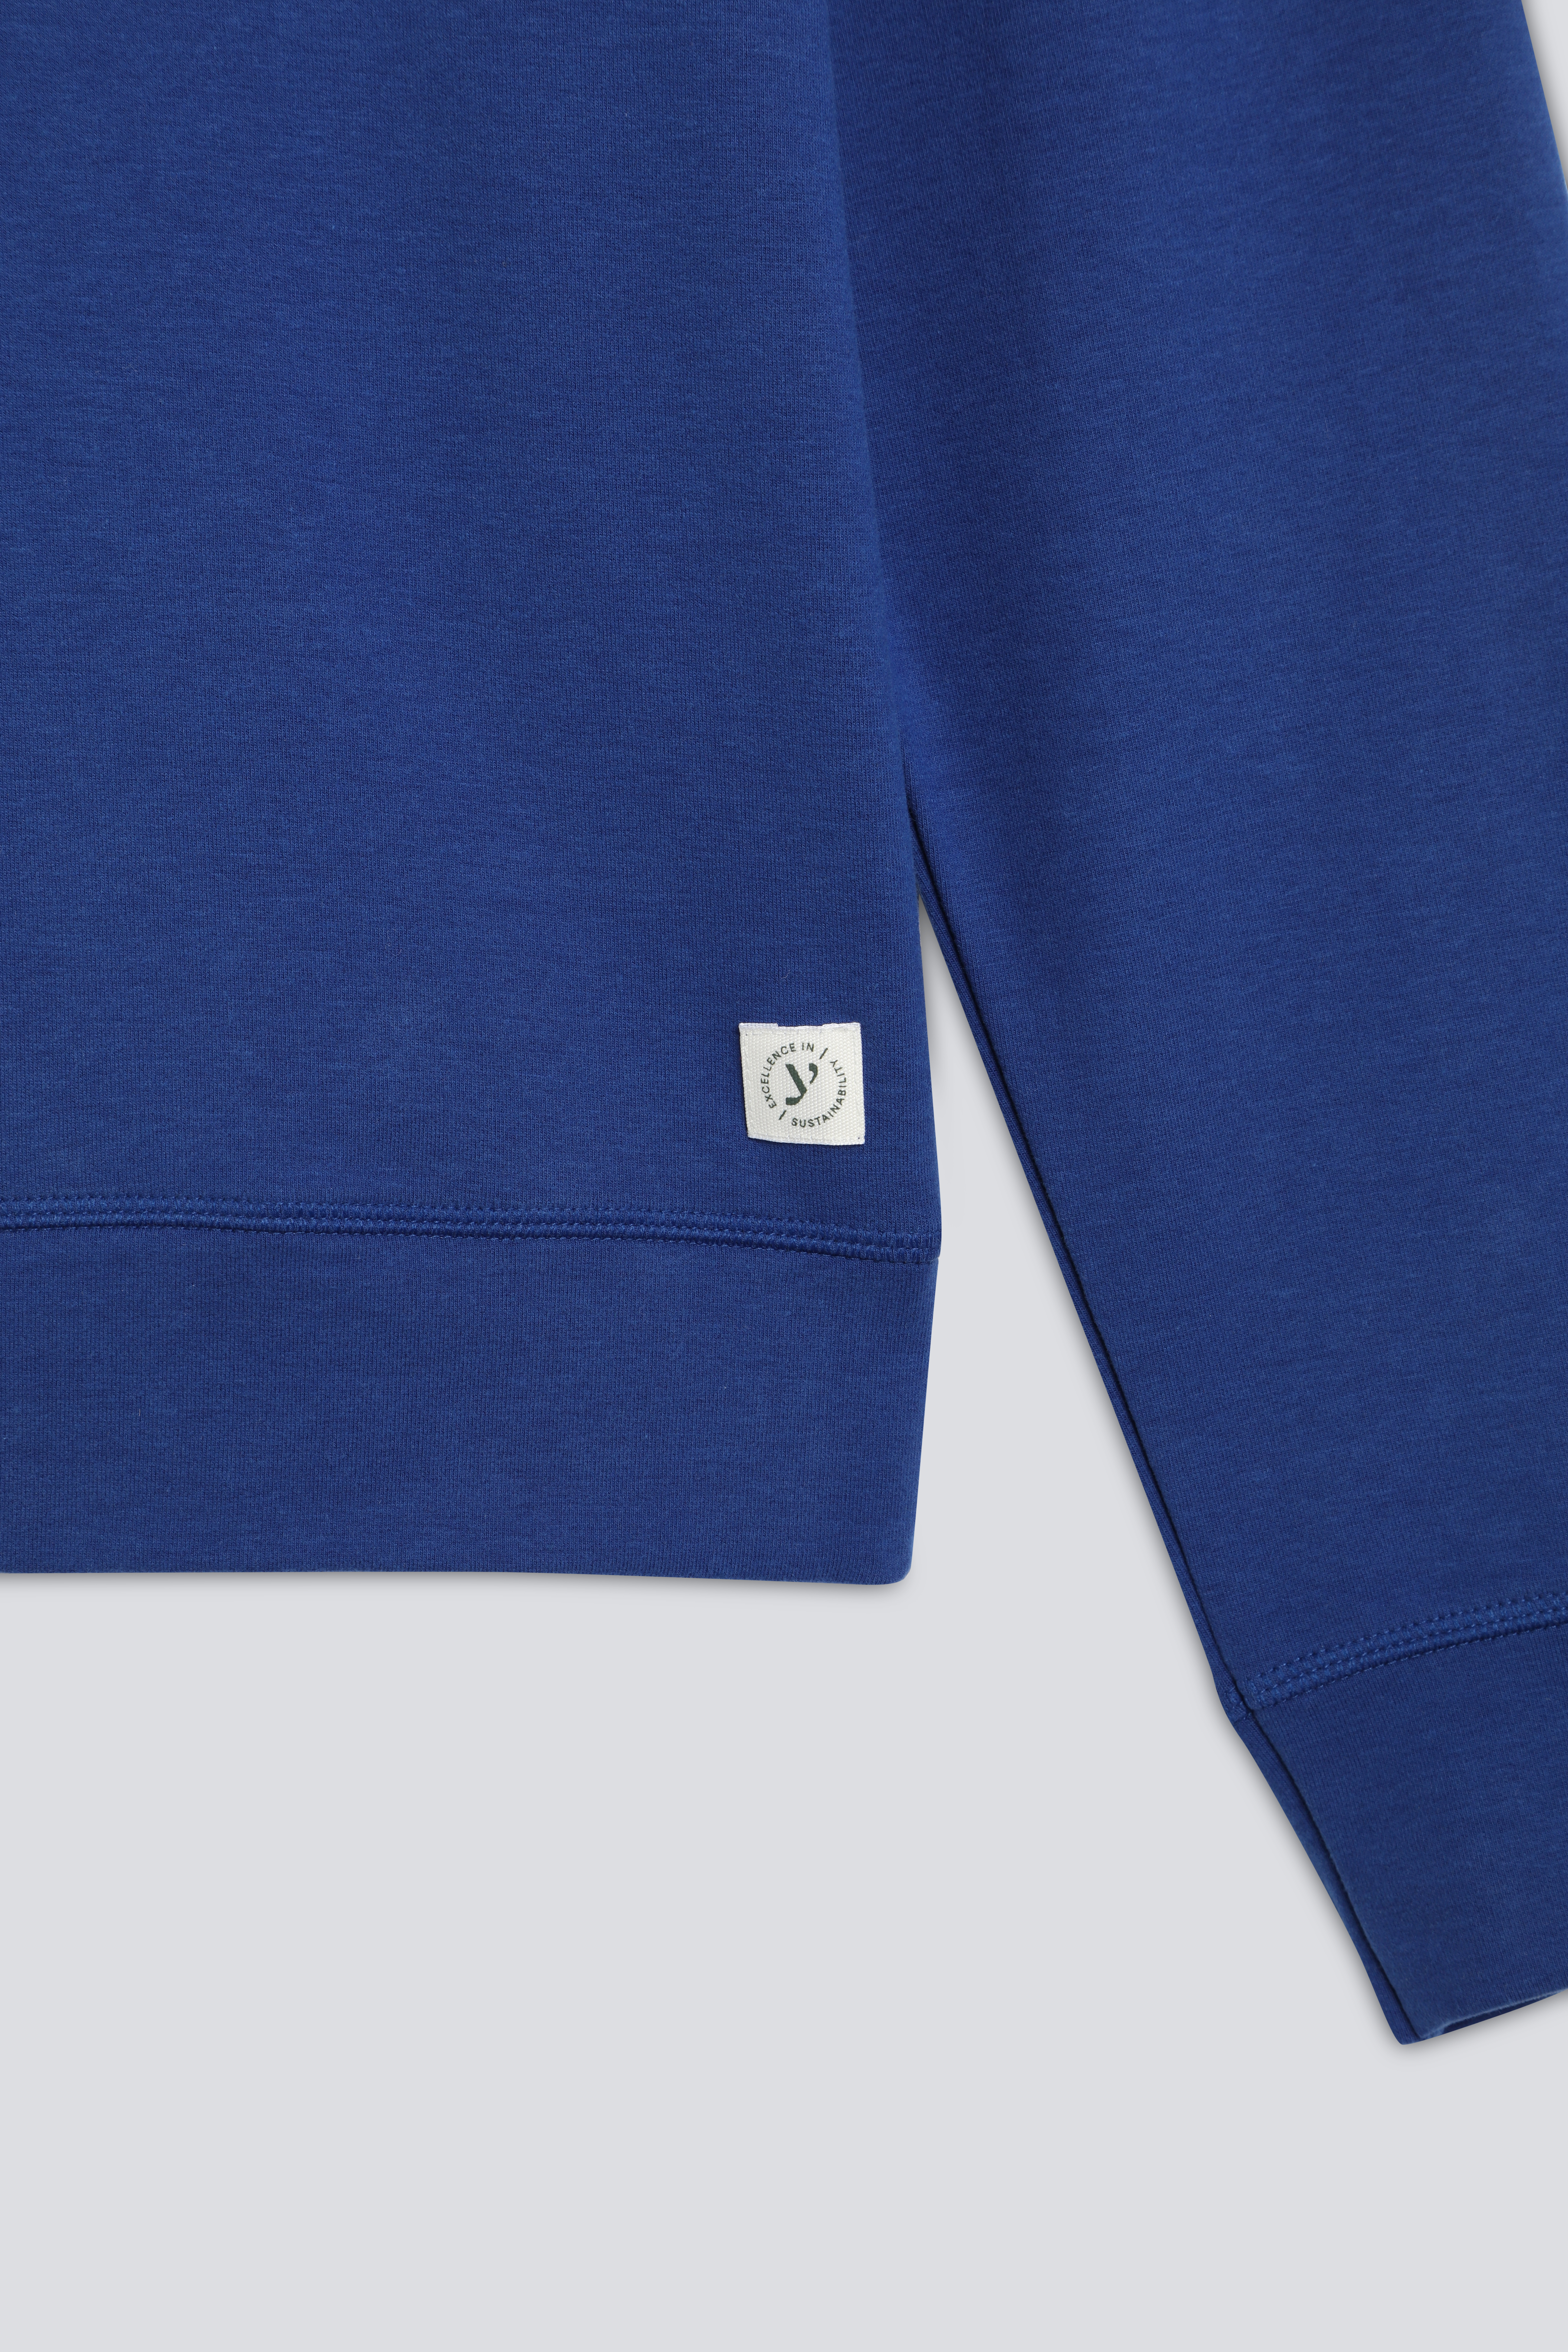 Sweatshirt Serie Felpa Stretch Detailansicht 01 | mey®